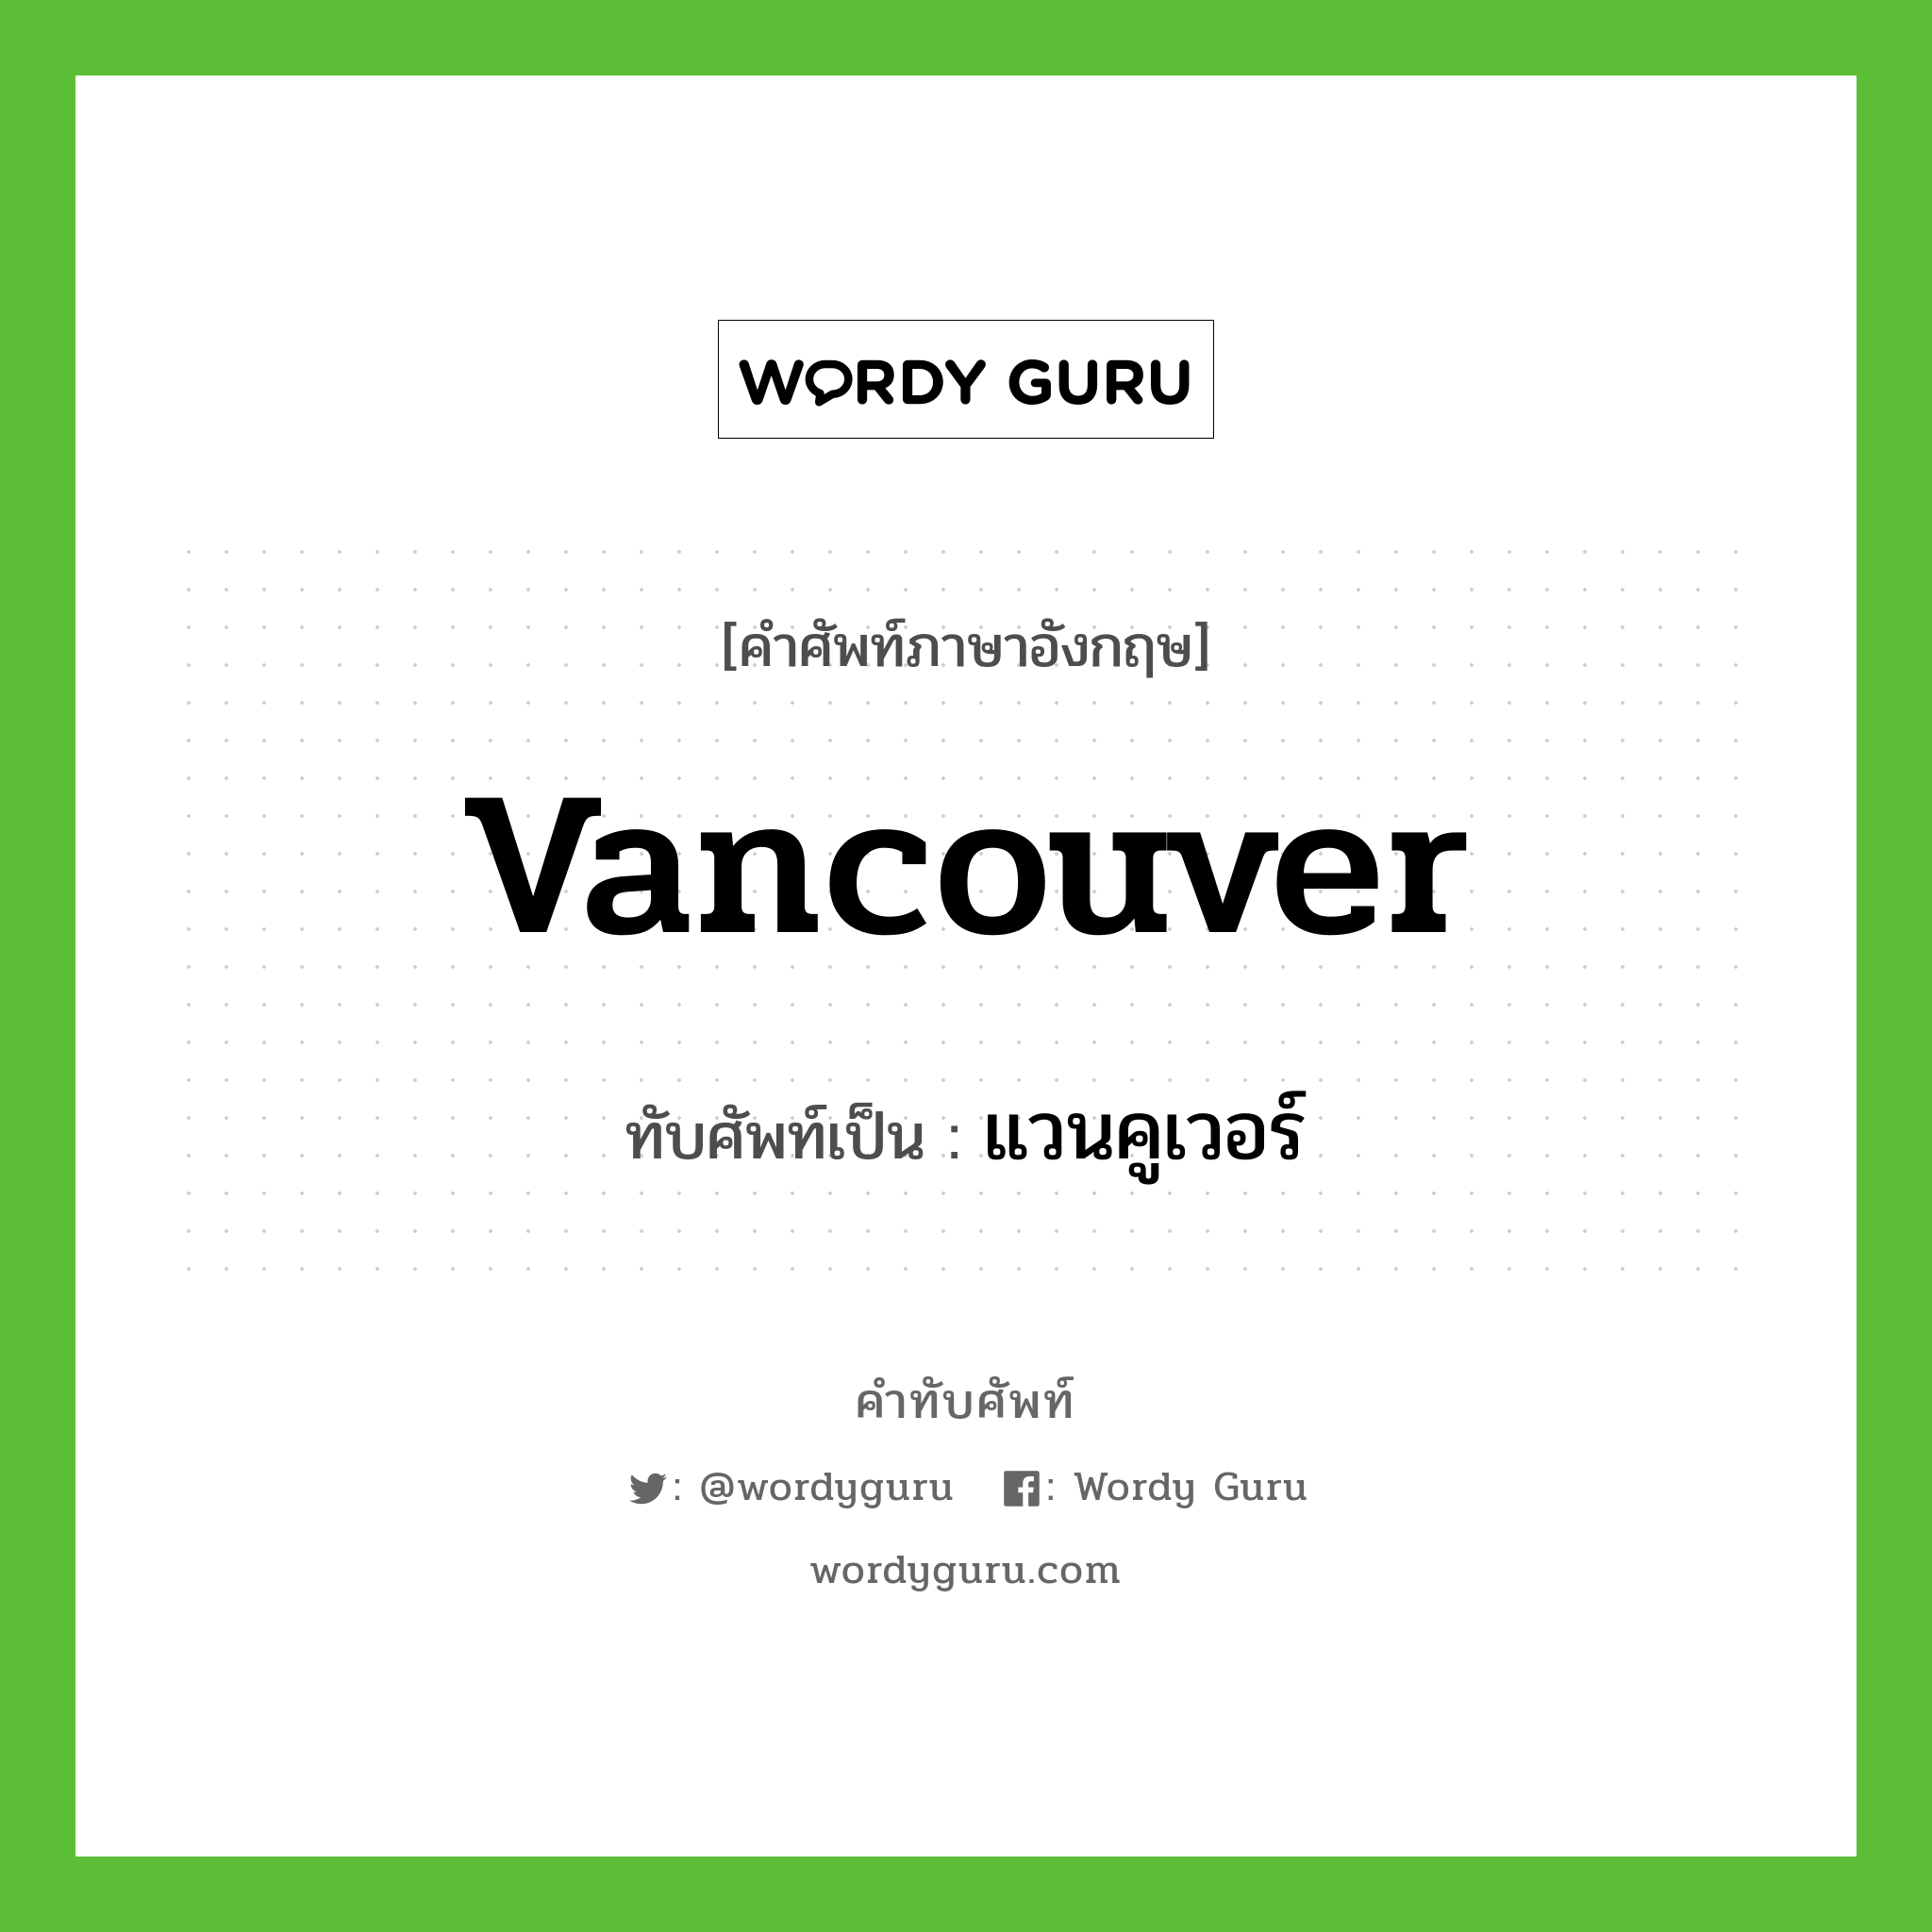 Vancouver เขียนเป็นคำไทยว่าอะไร?, คำศัพท์ภาษาอังกฤษ Vancouver ทับศัพท์เป็น แวนคูเวอร์